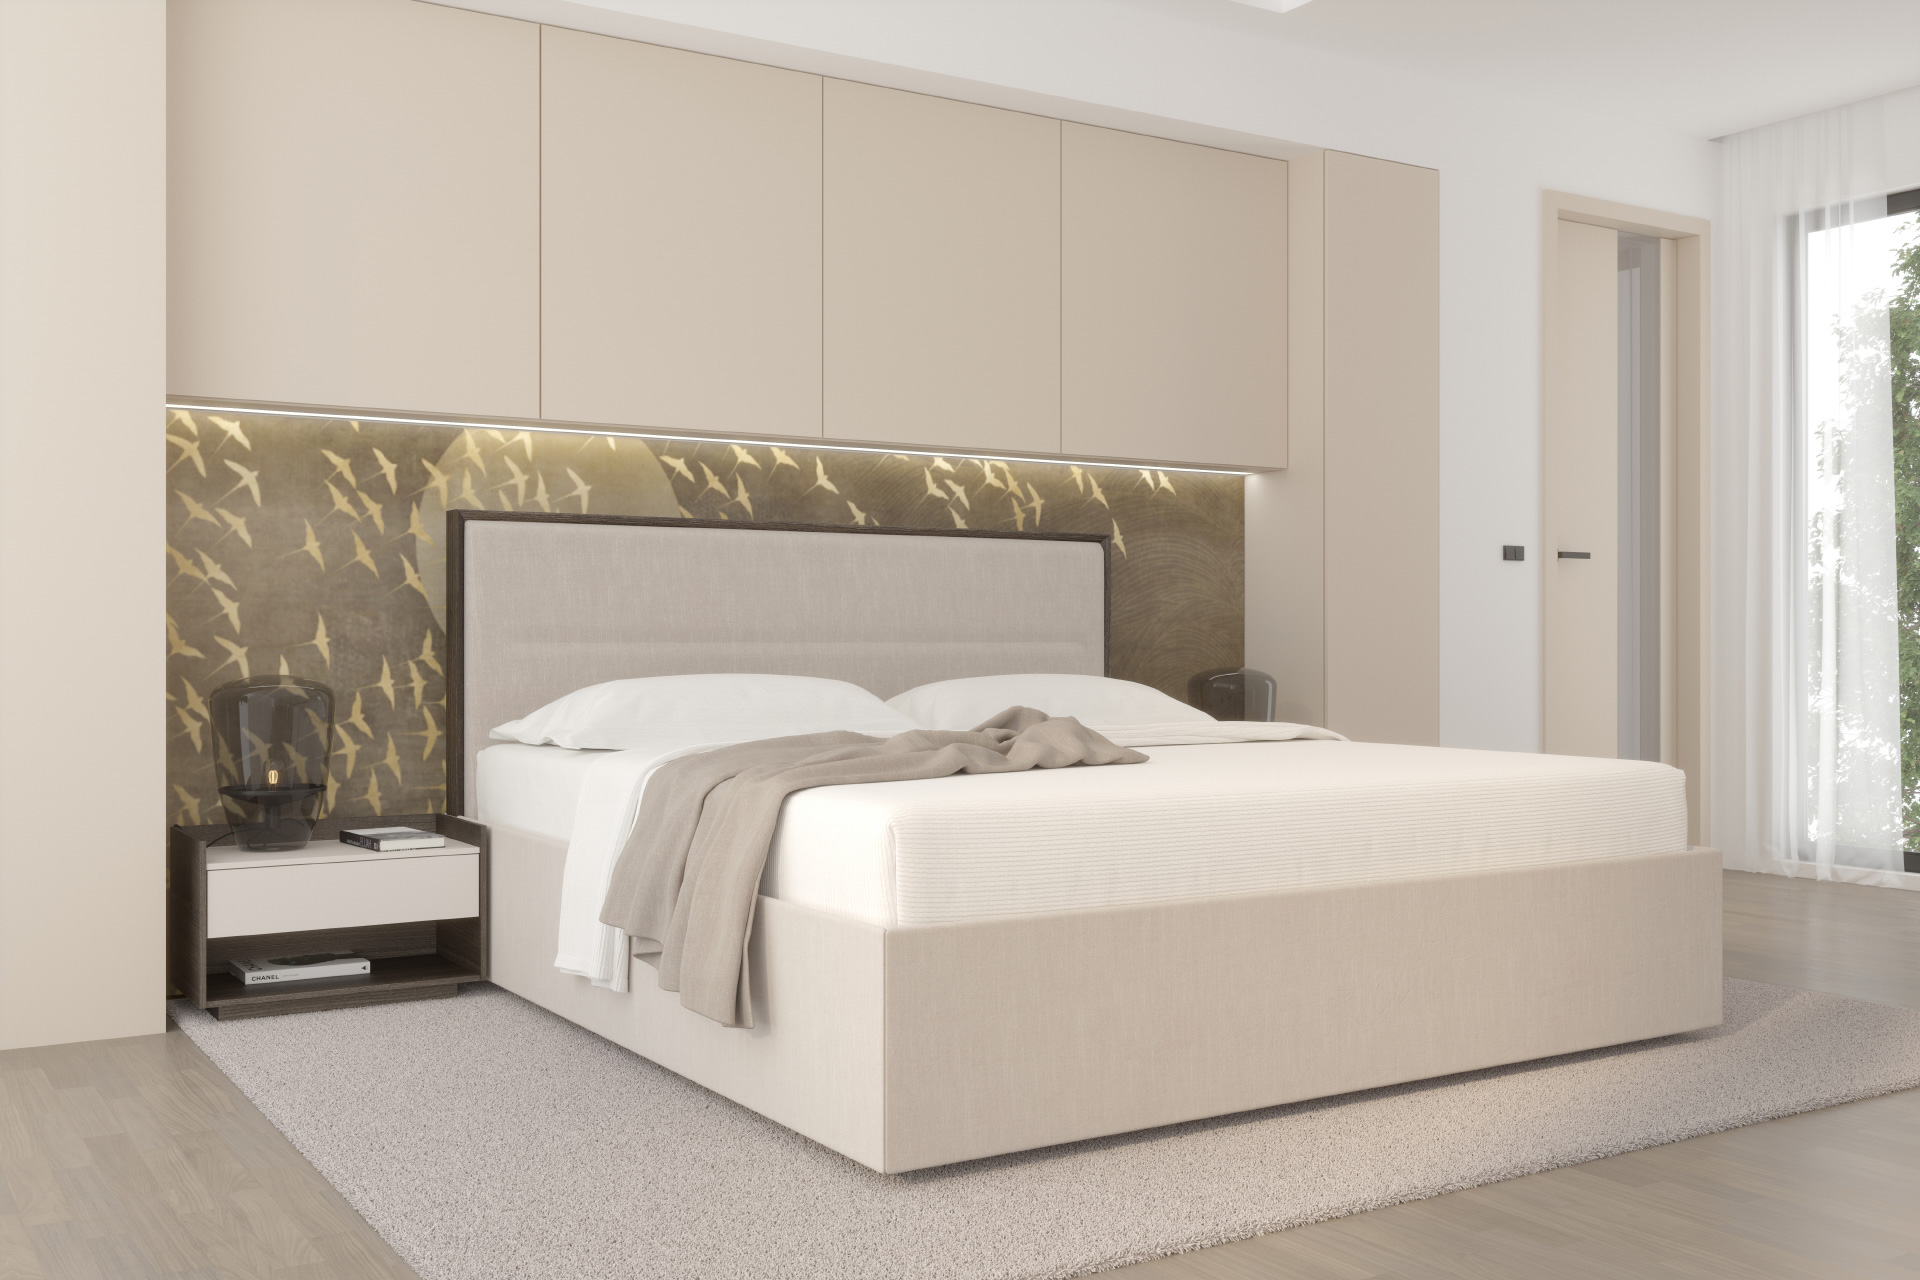 Hanák ložnice MADISON charakteristická svou precizně zpracovanou rámovou postelí